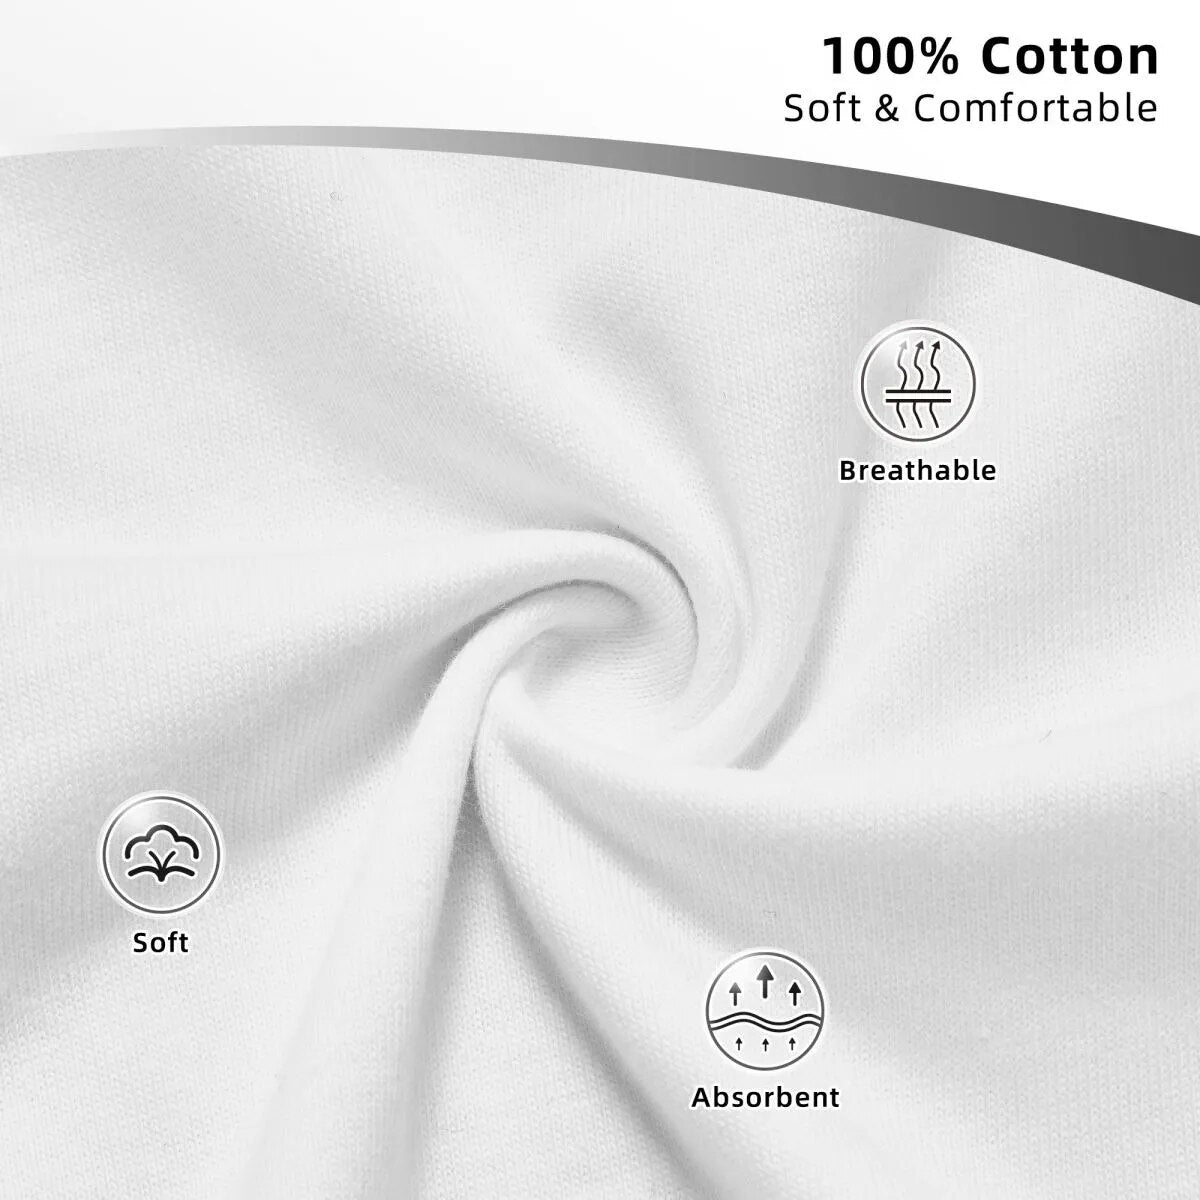 F1 Men's Formula 1 Car Vintage T Shirt 100% Cotton Fan Merchandise